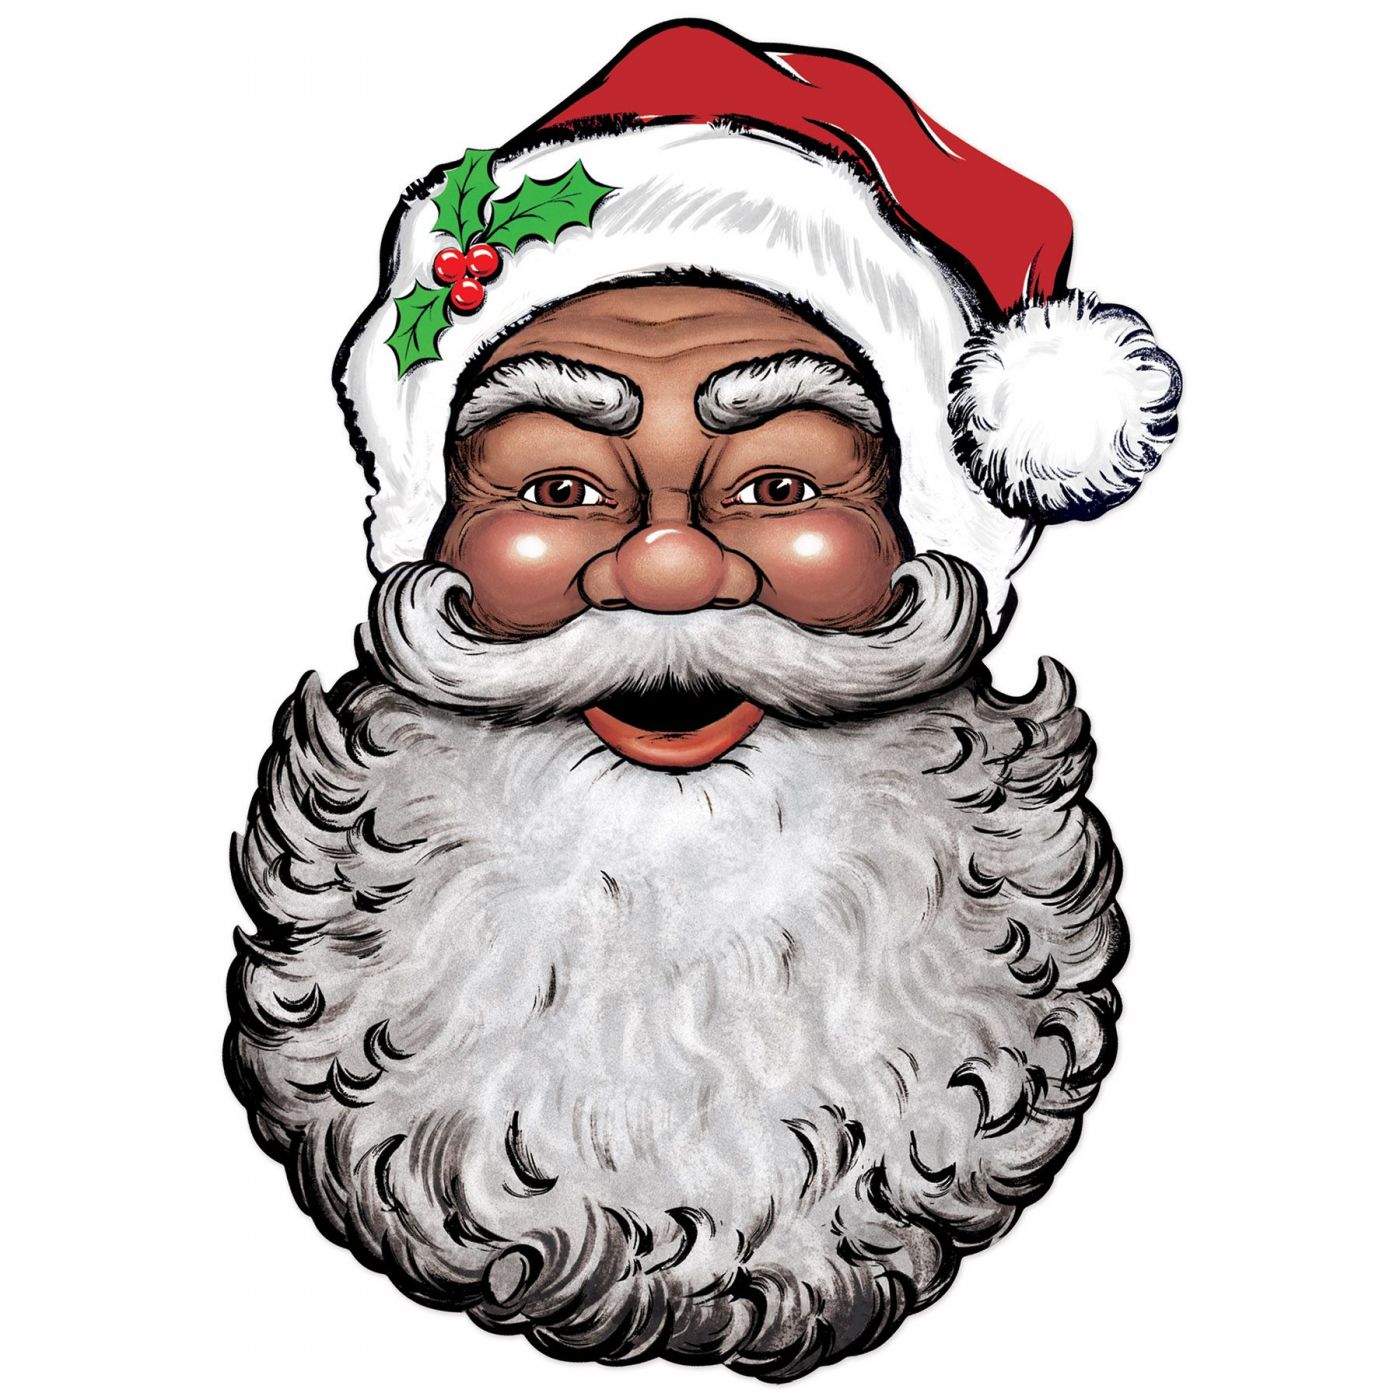 Display Santa Face Cutout (12) image